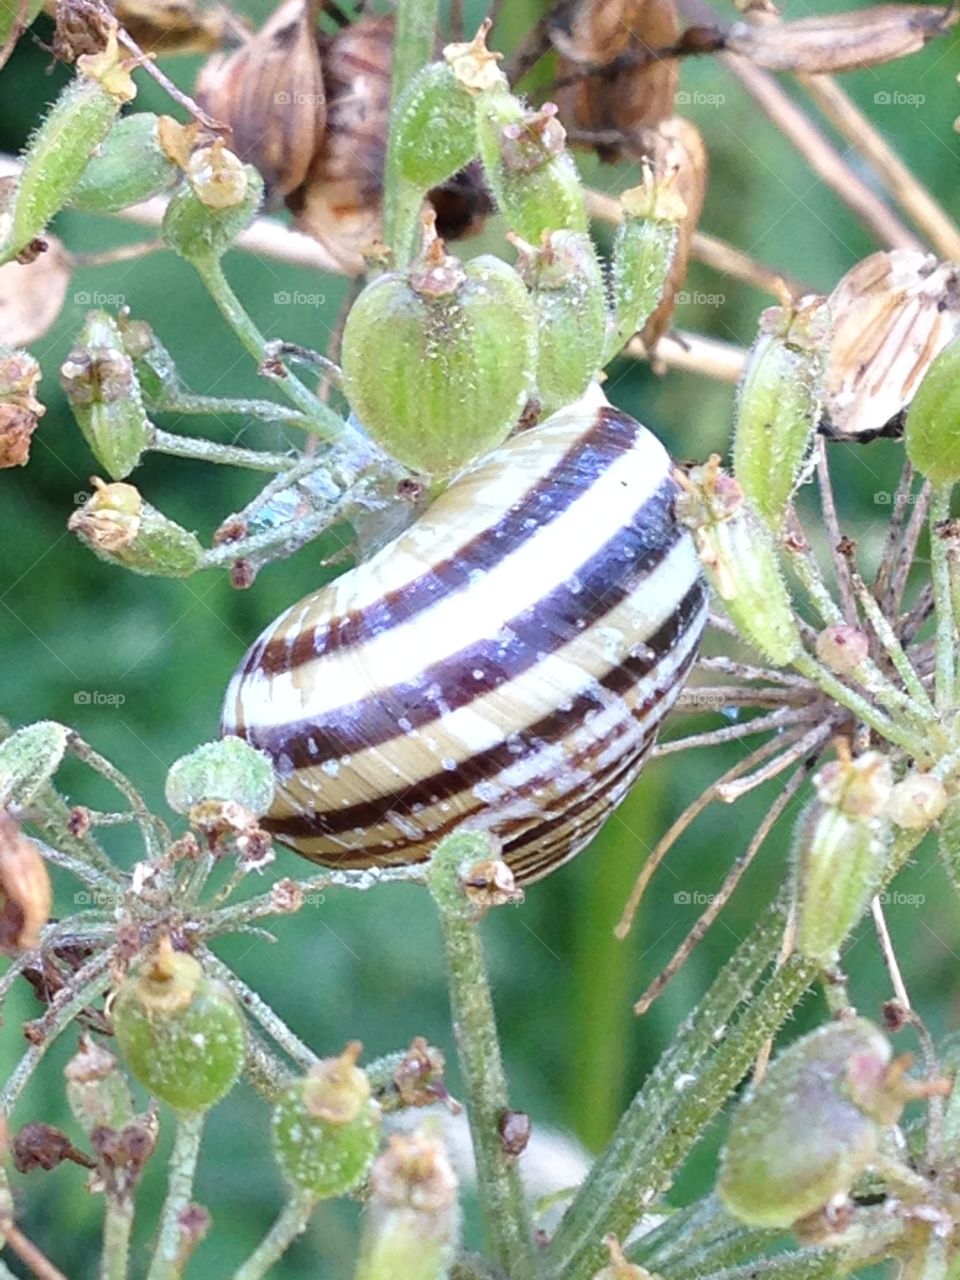 Snail on a flower stem